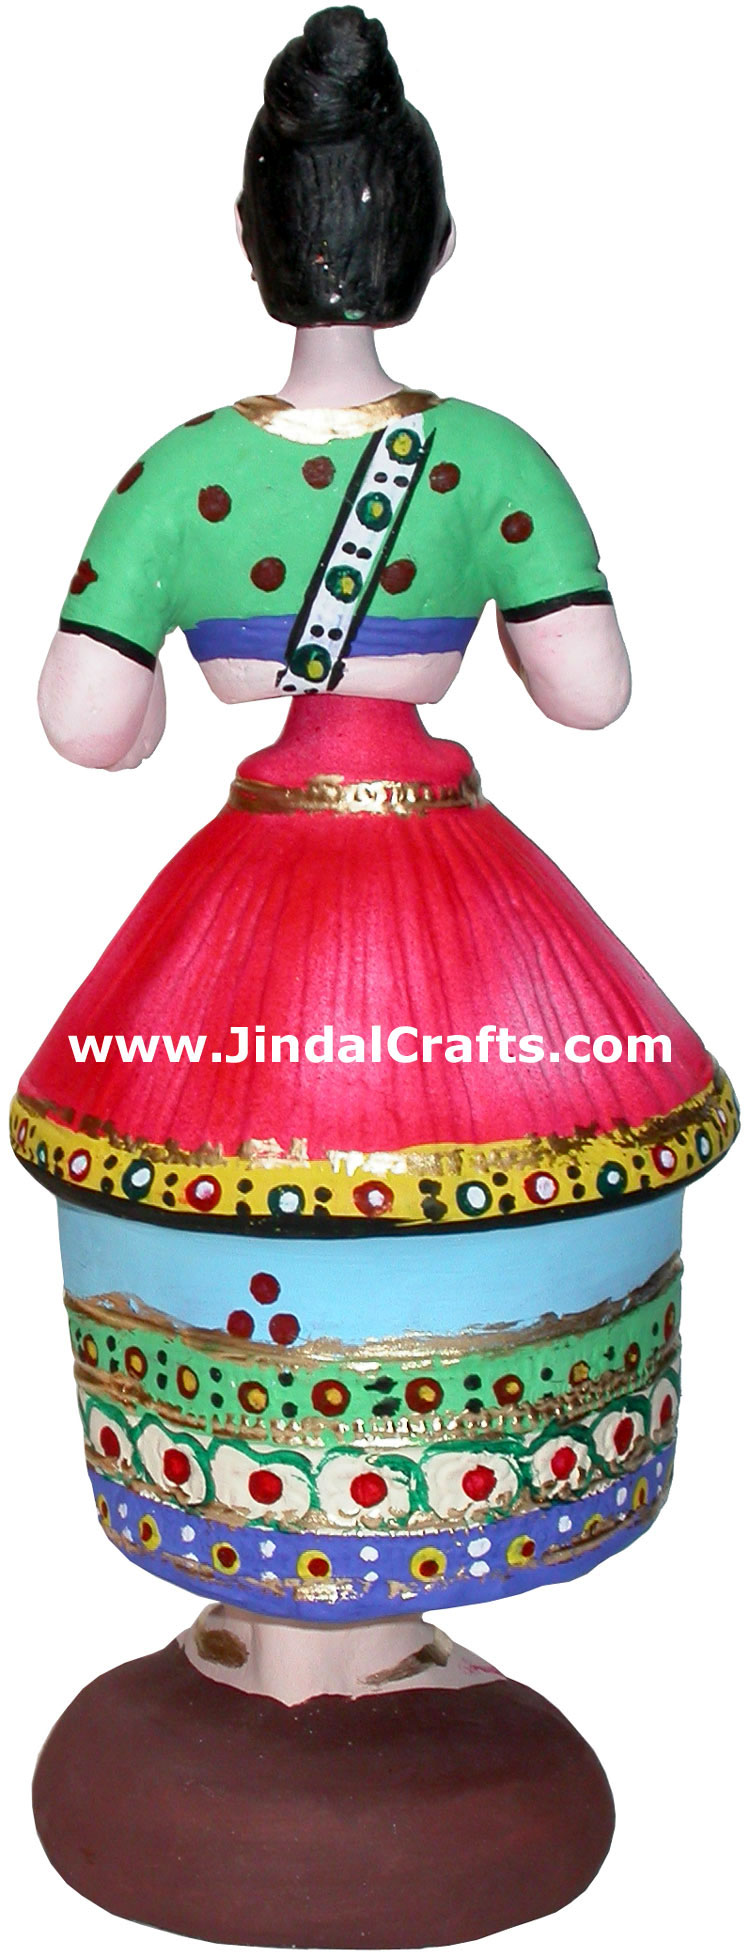 Papier Mache made Traditional Dancing Doll - Handmade Art